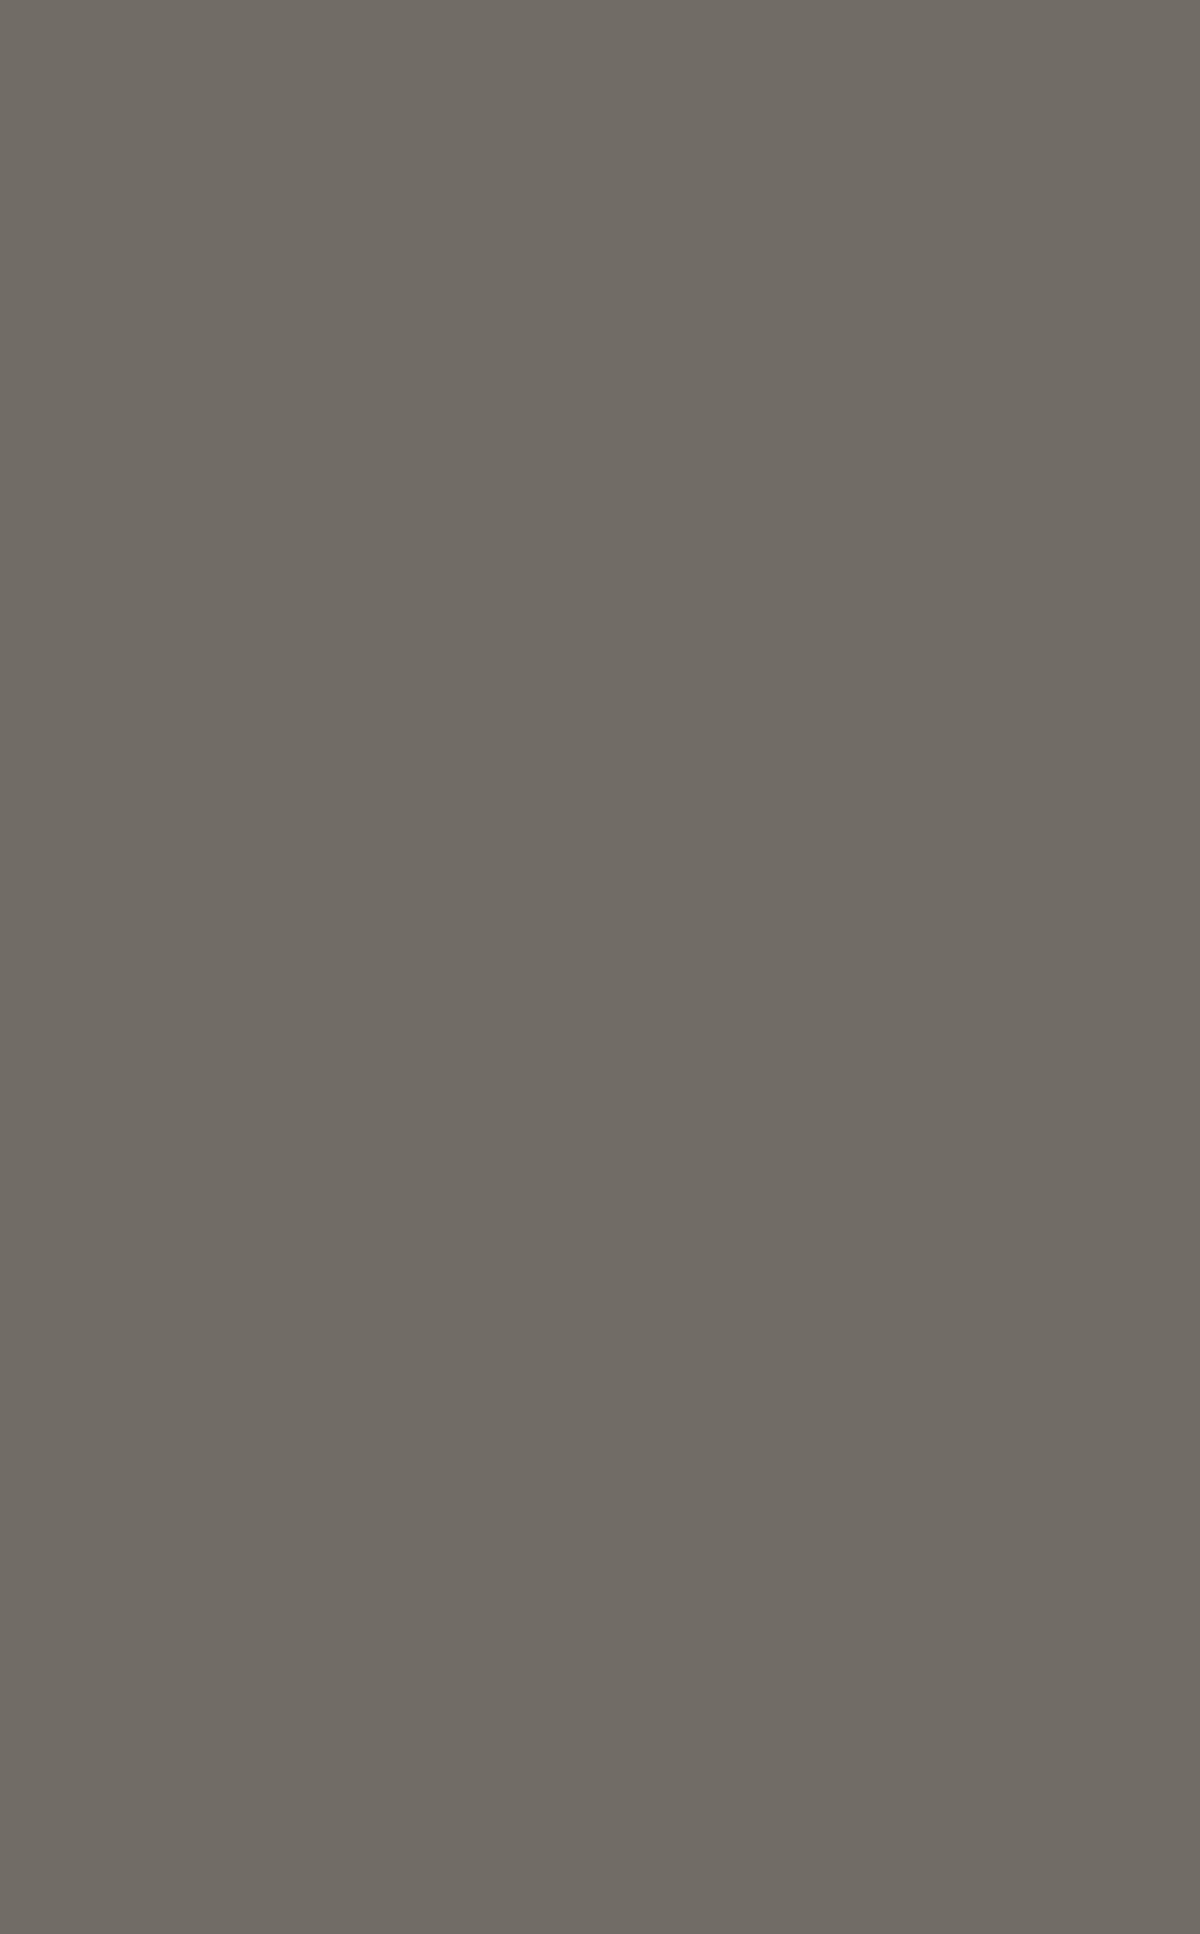 Нанесение платочного рисунка на ткань методом печати по шаблону в цеху ОАО «Павловопосадская платочная мануфактура». Фотография: А. Геодакян / ТАСС